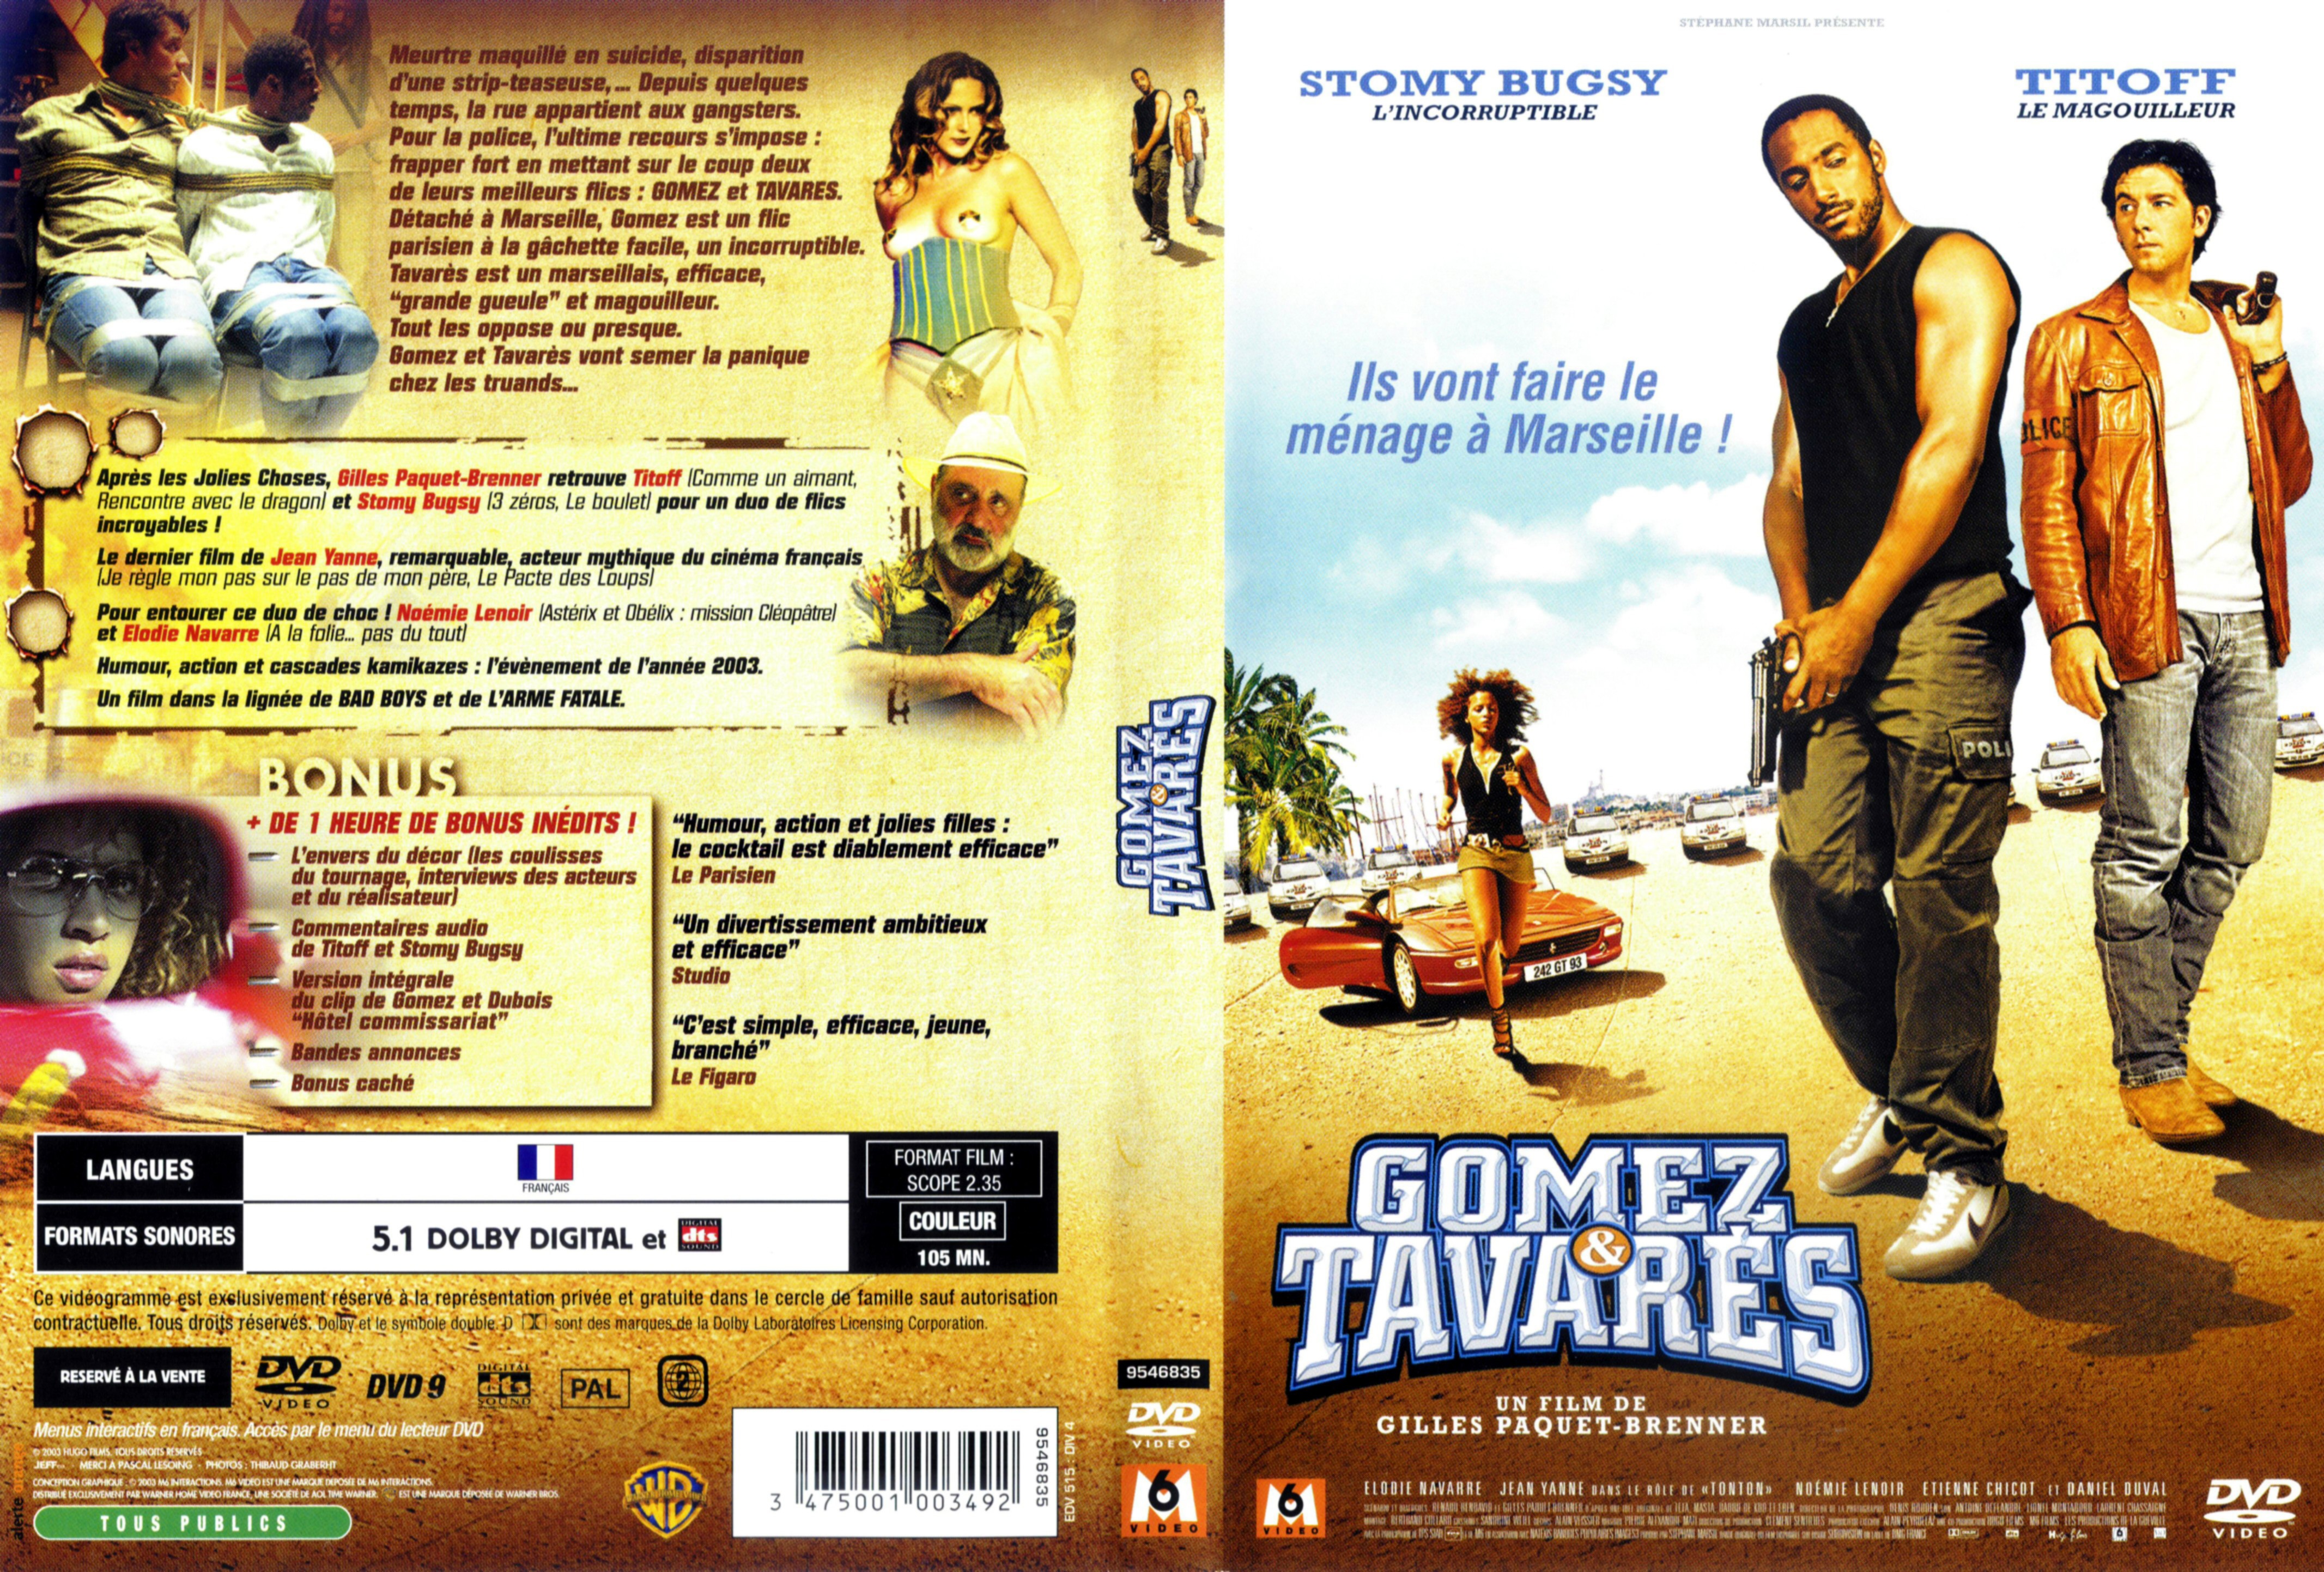 Jaquette DVD Gomez et Tavares